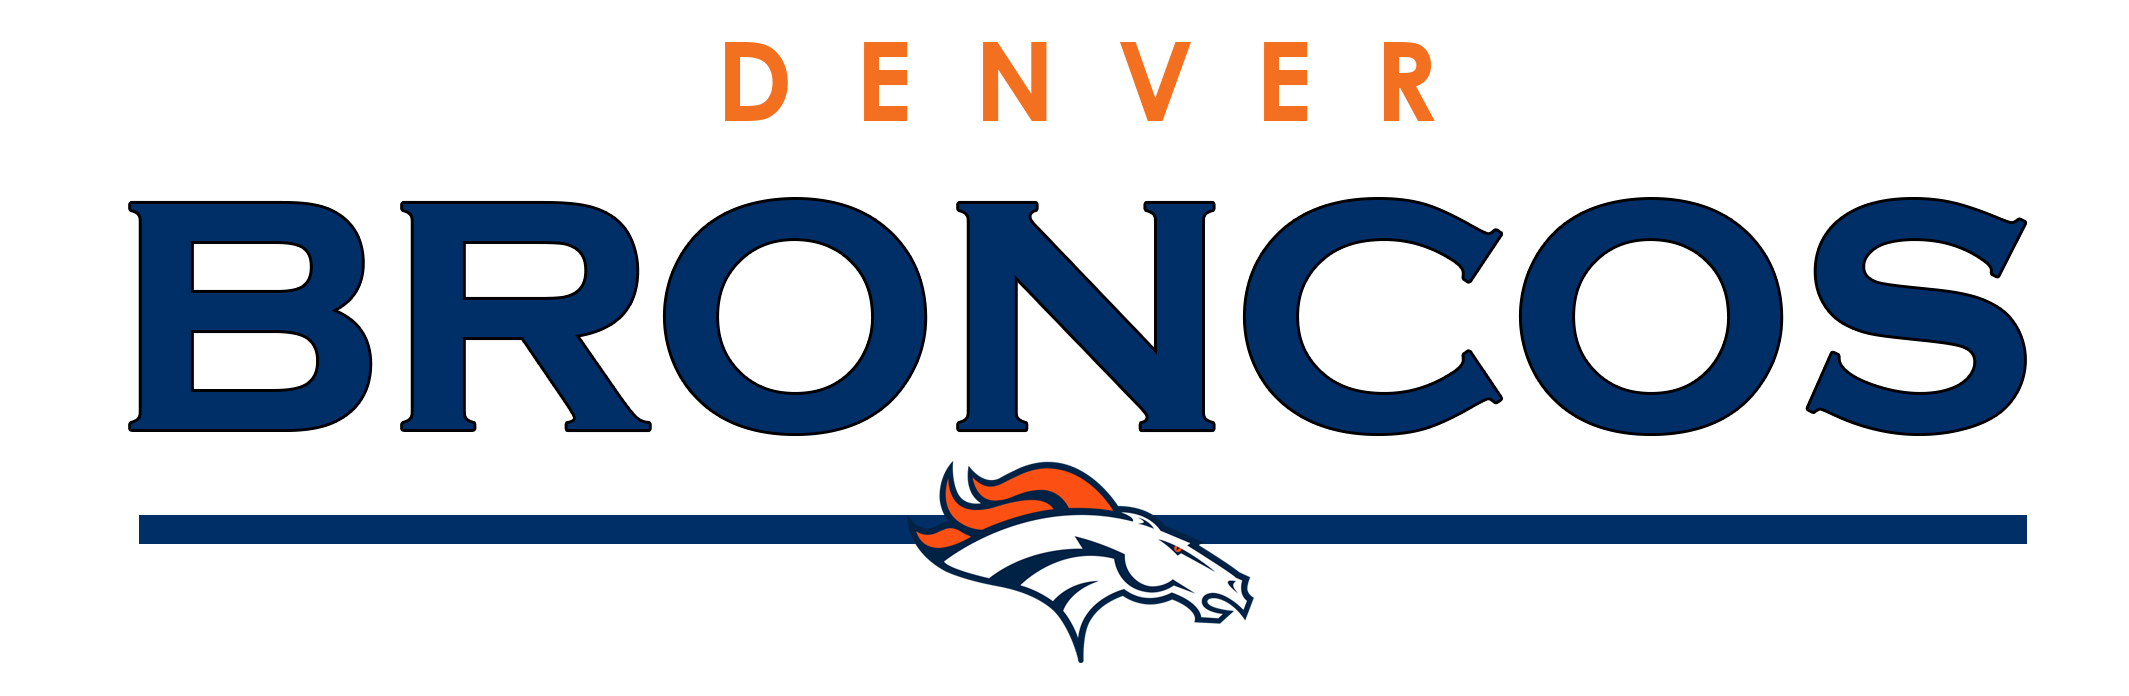 Denver Broncos Text Logo PNG Transparent pngteam.com